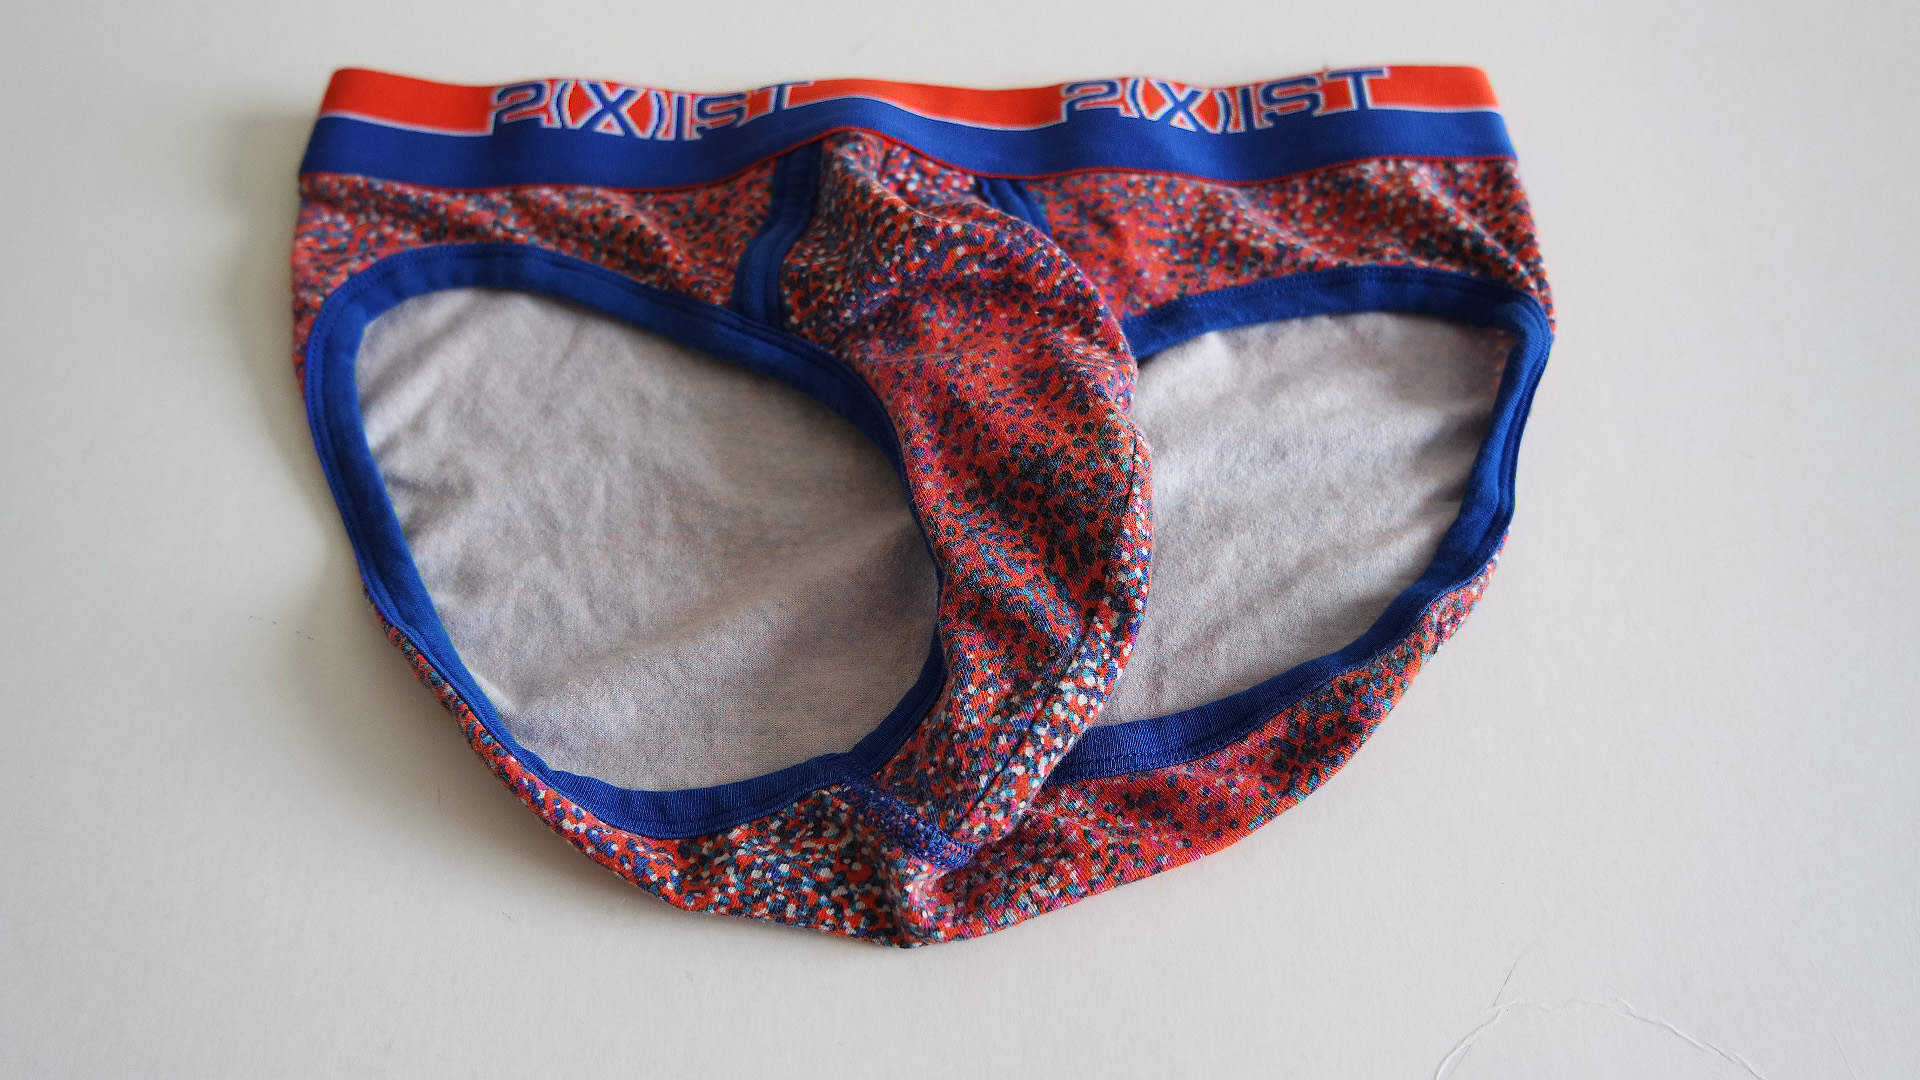 Underwearset-Underwear for sale-Offers: 2 X IST briefs